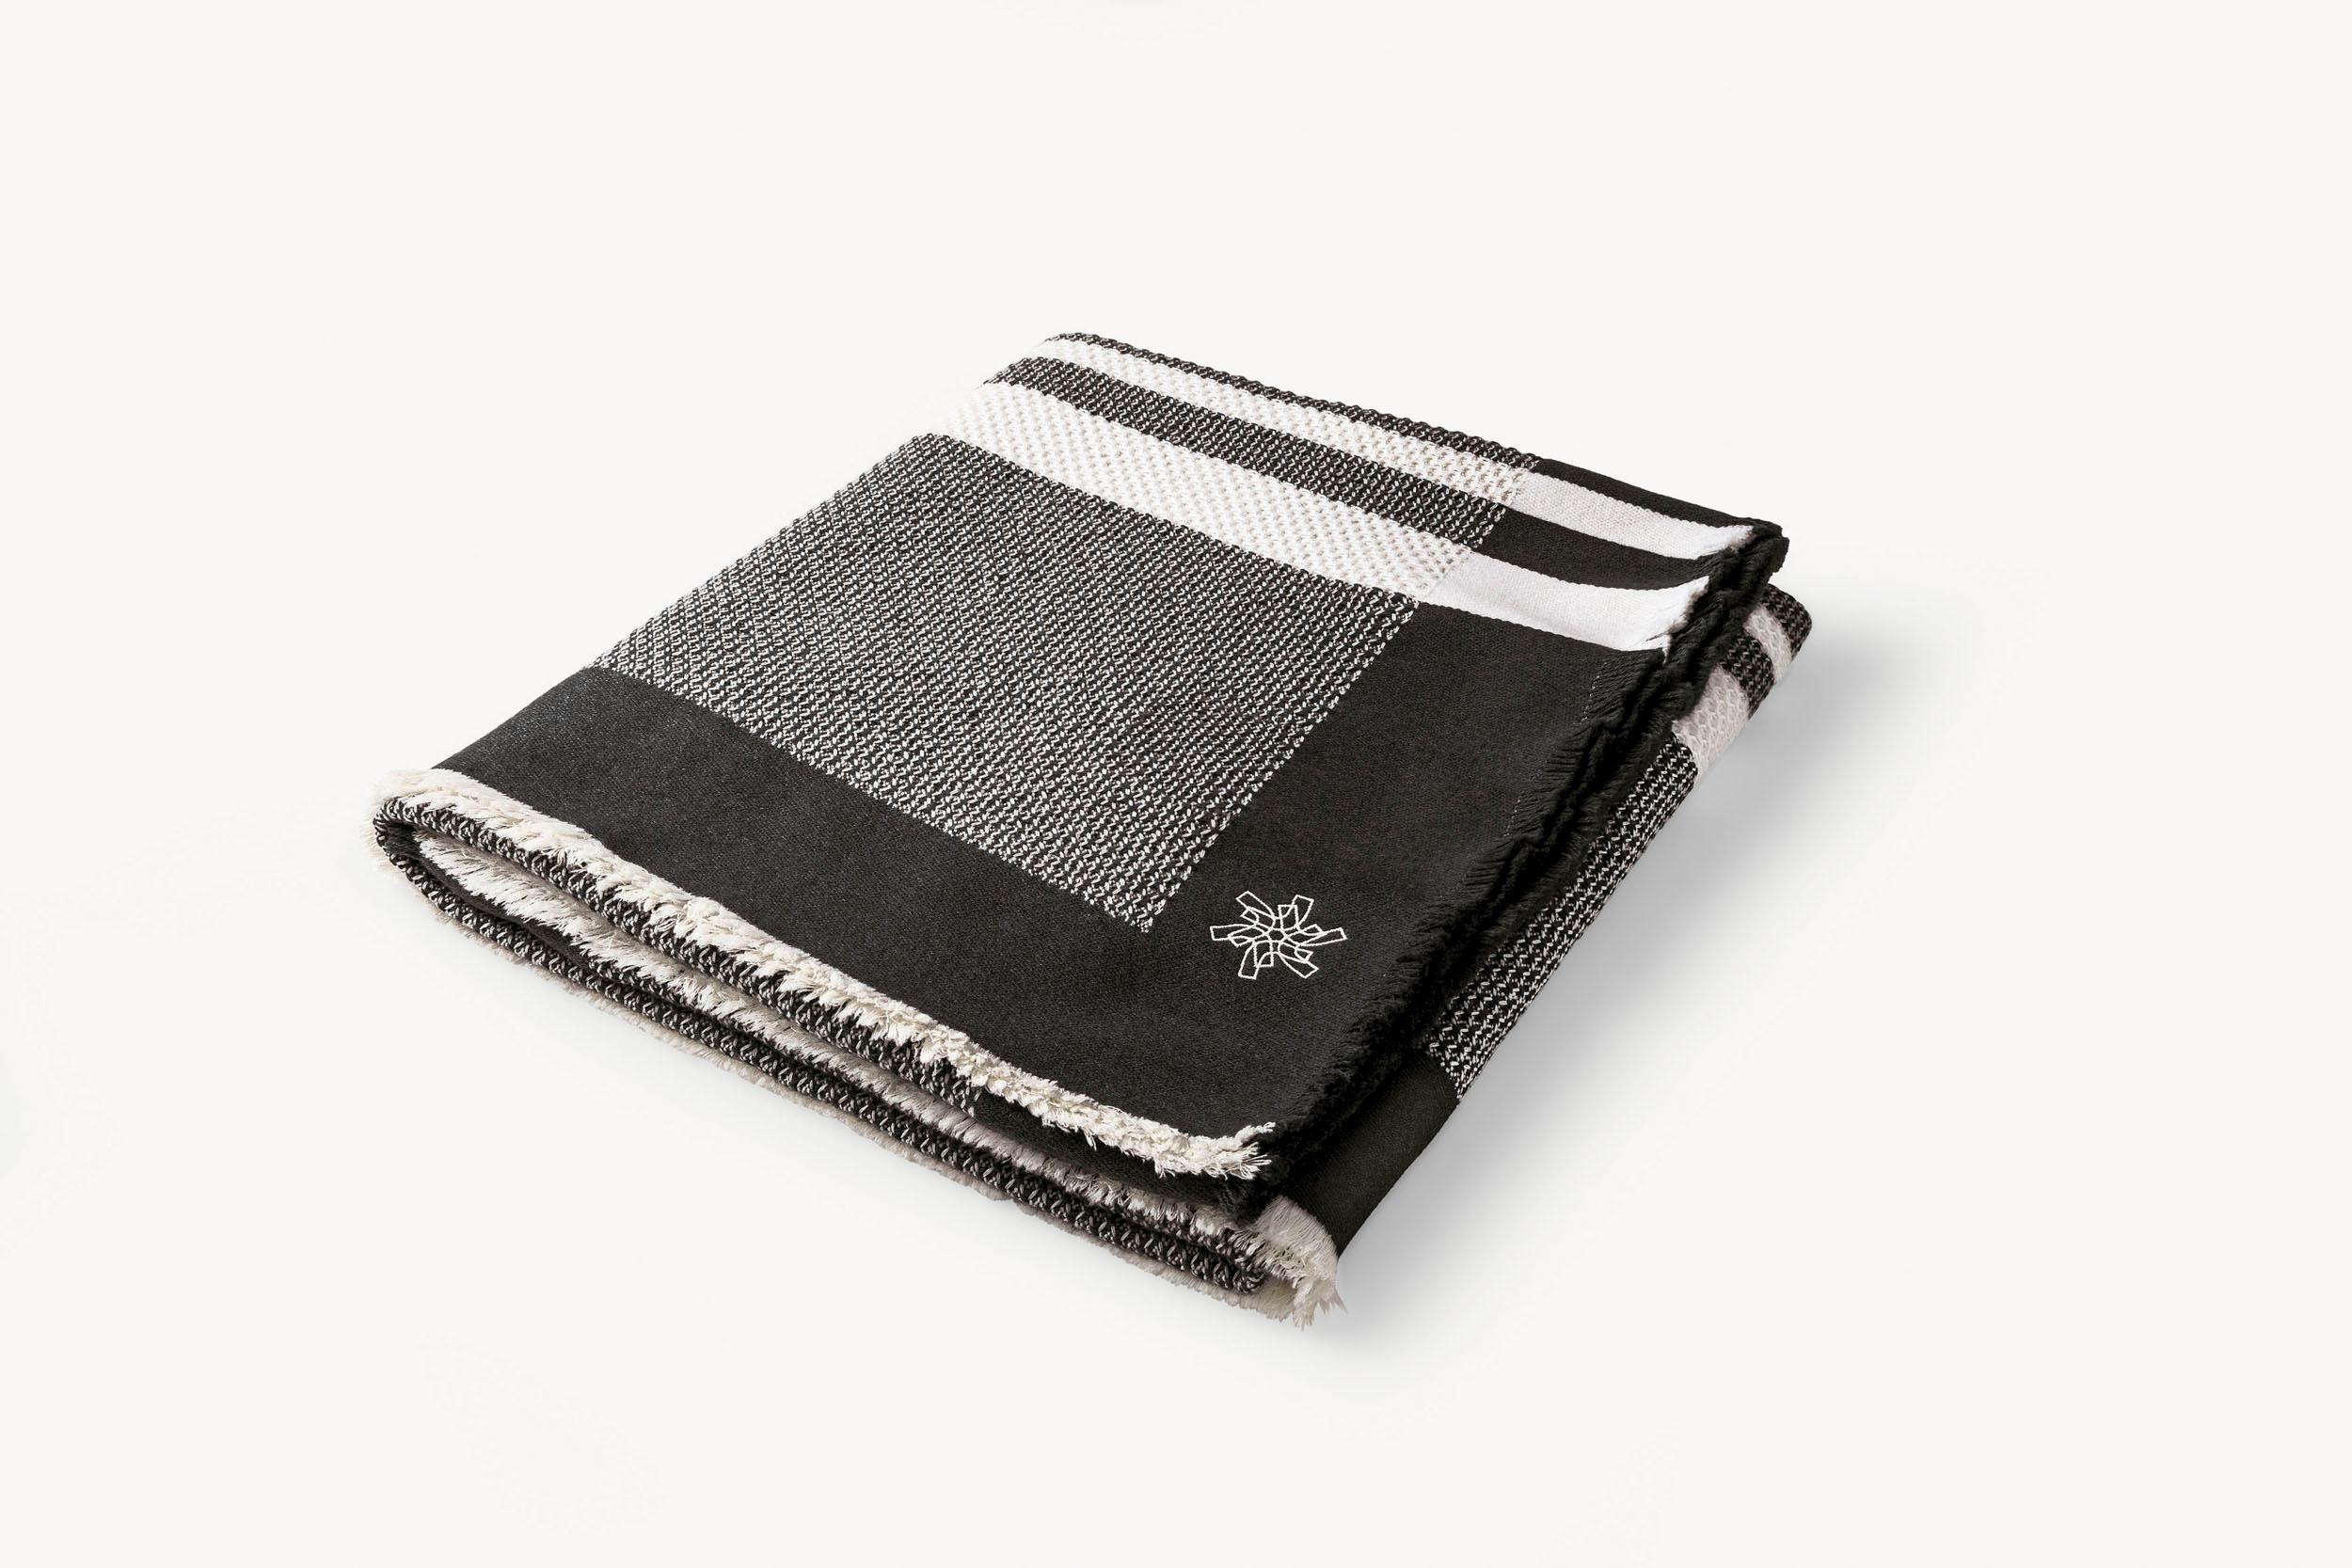 Décoration textile douce pour habiller votre espace avec style. Plaid en 100% Cashwool, une fibre fine.